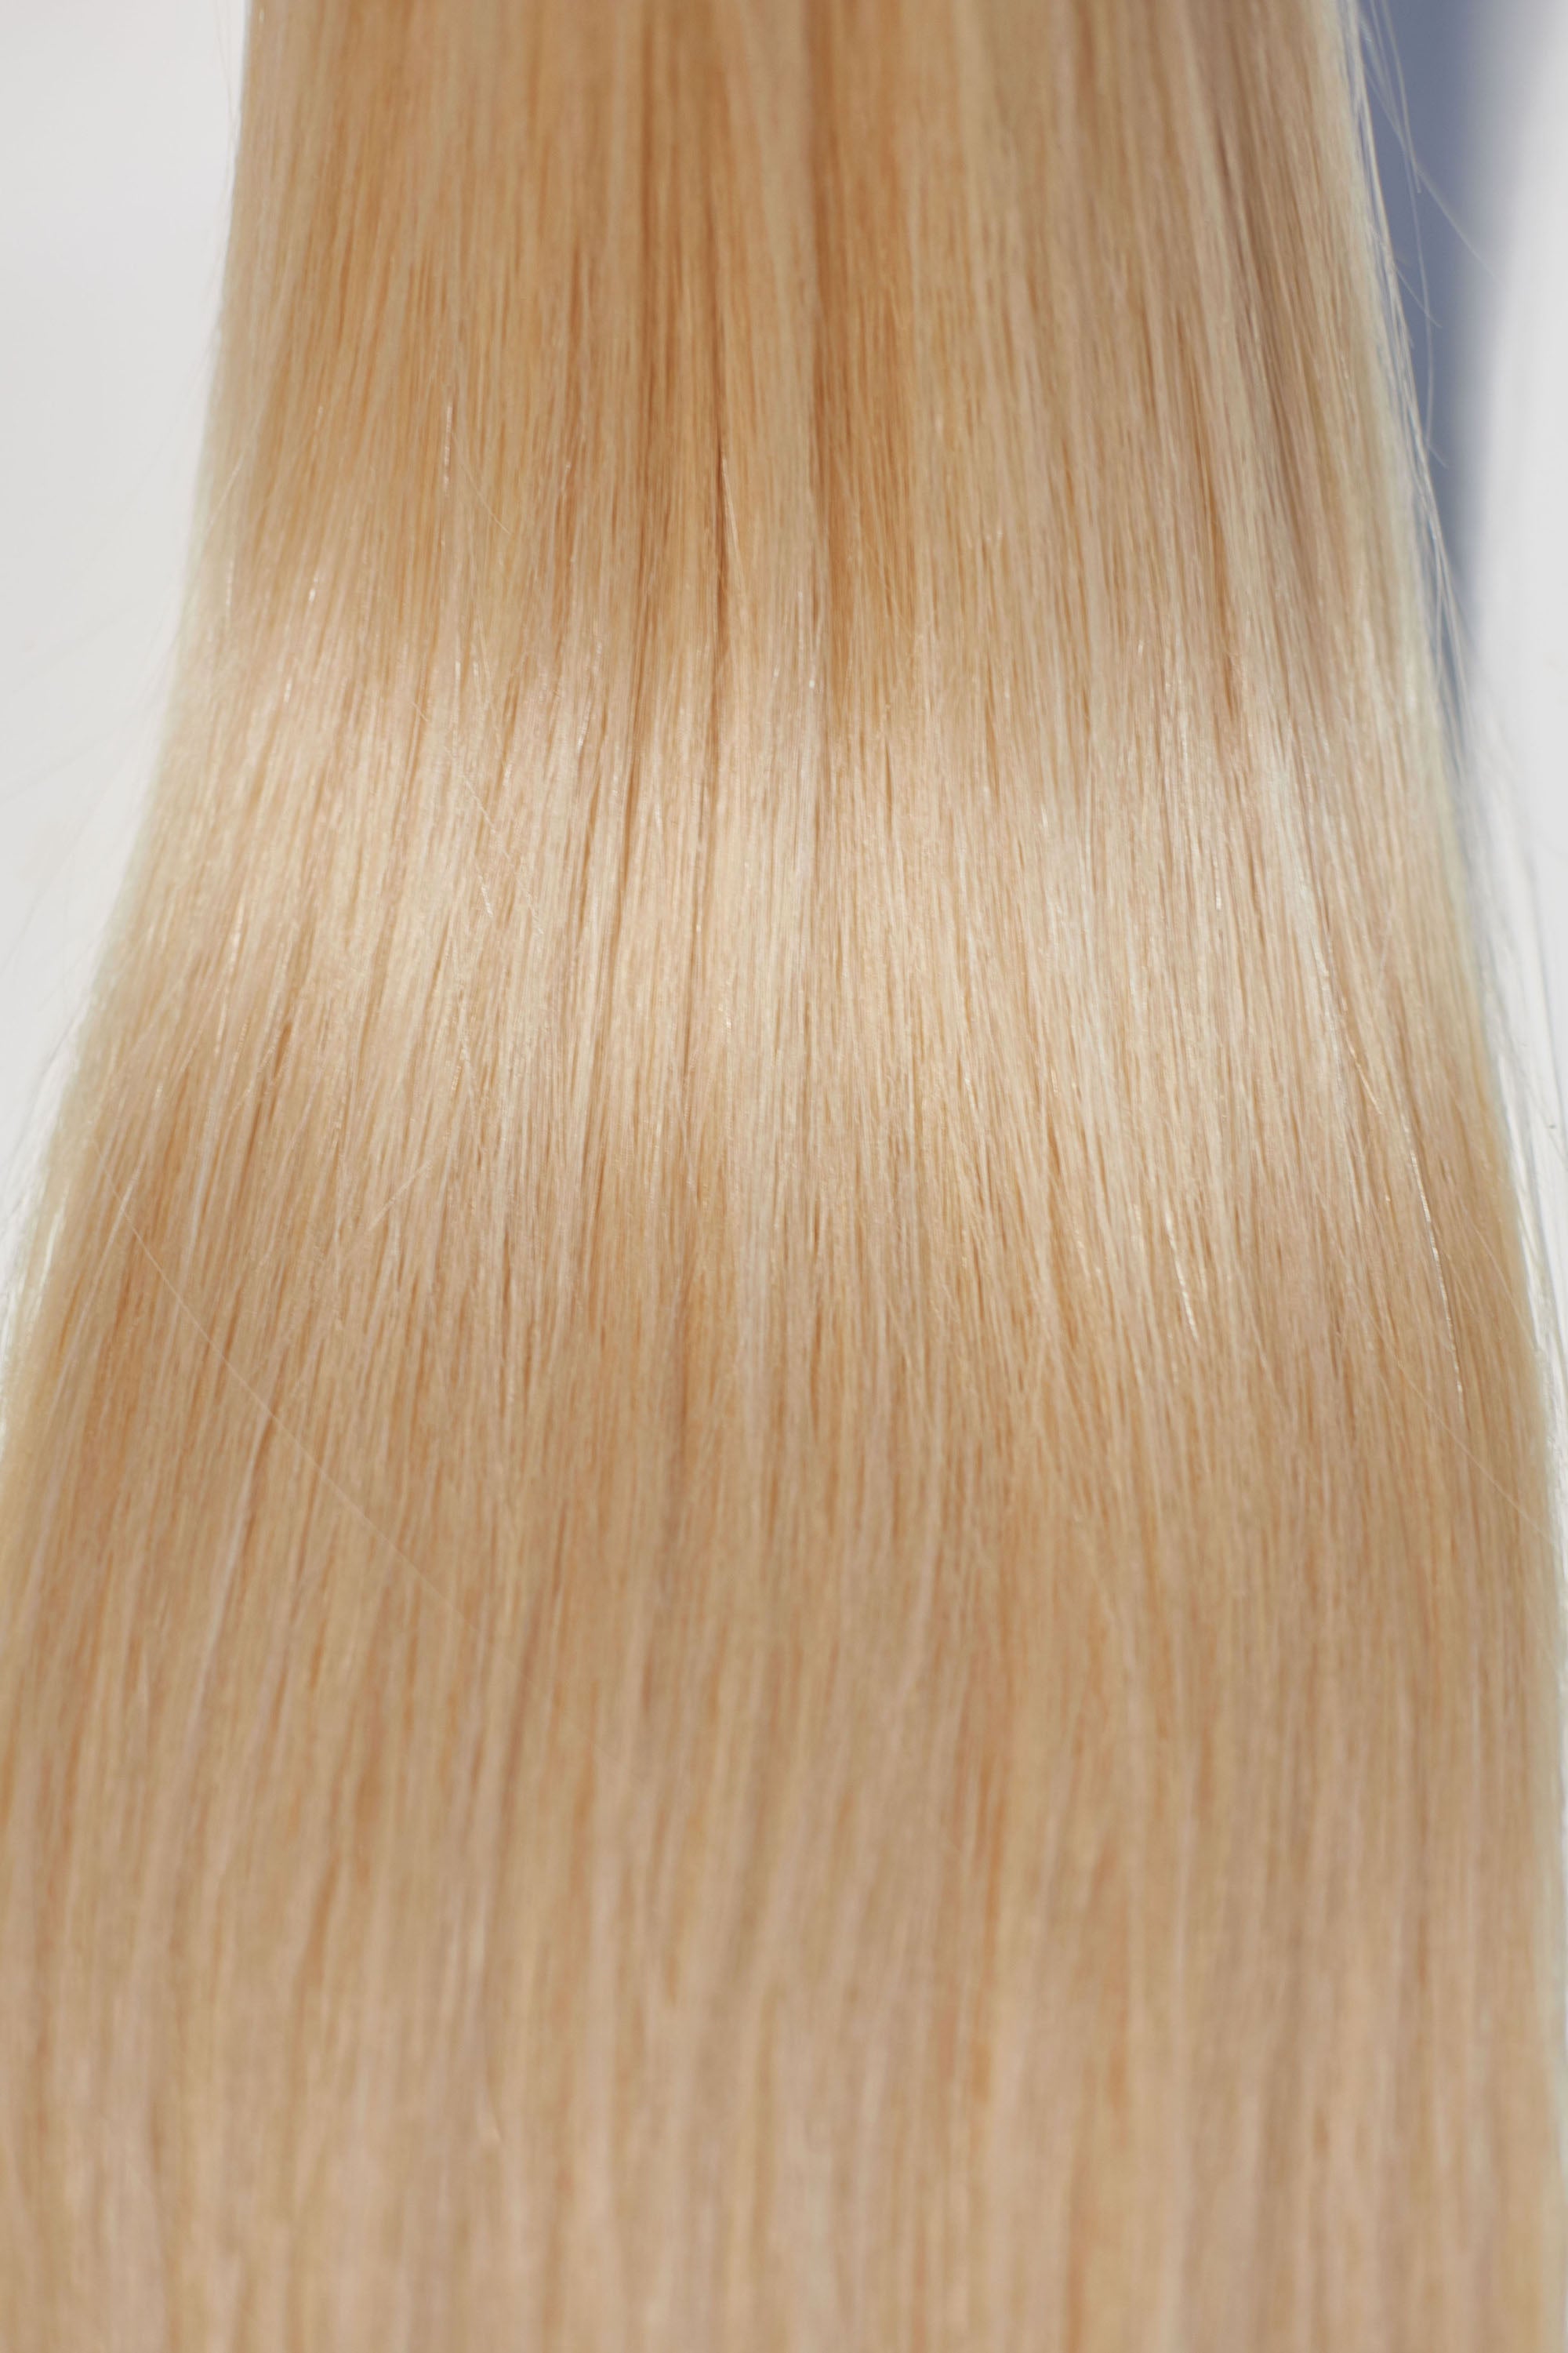 Behair professional Keratin Tip "Premium" 20" (50cm) Natural Straight Beach Blonde #613 - 25g (Micro - 0.5g each pcs) hair extensions